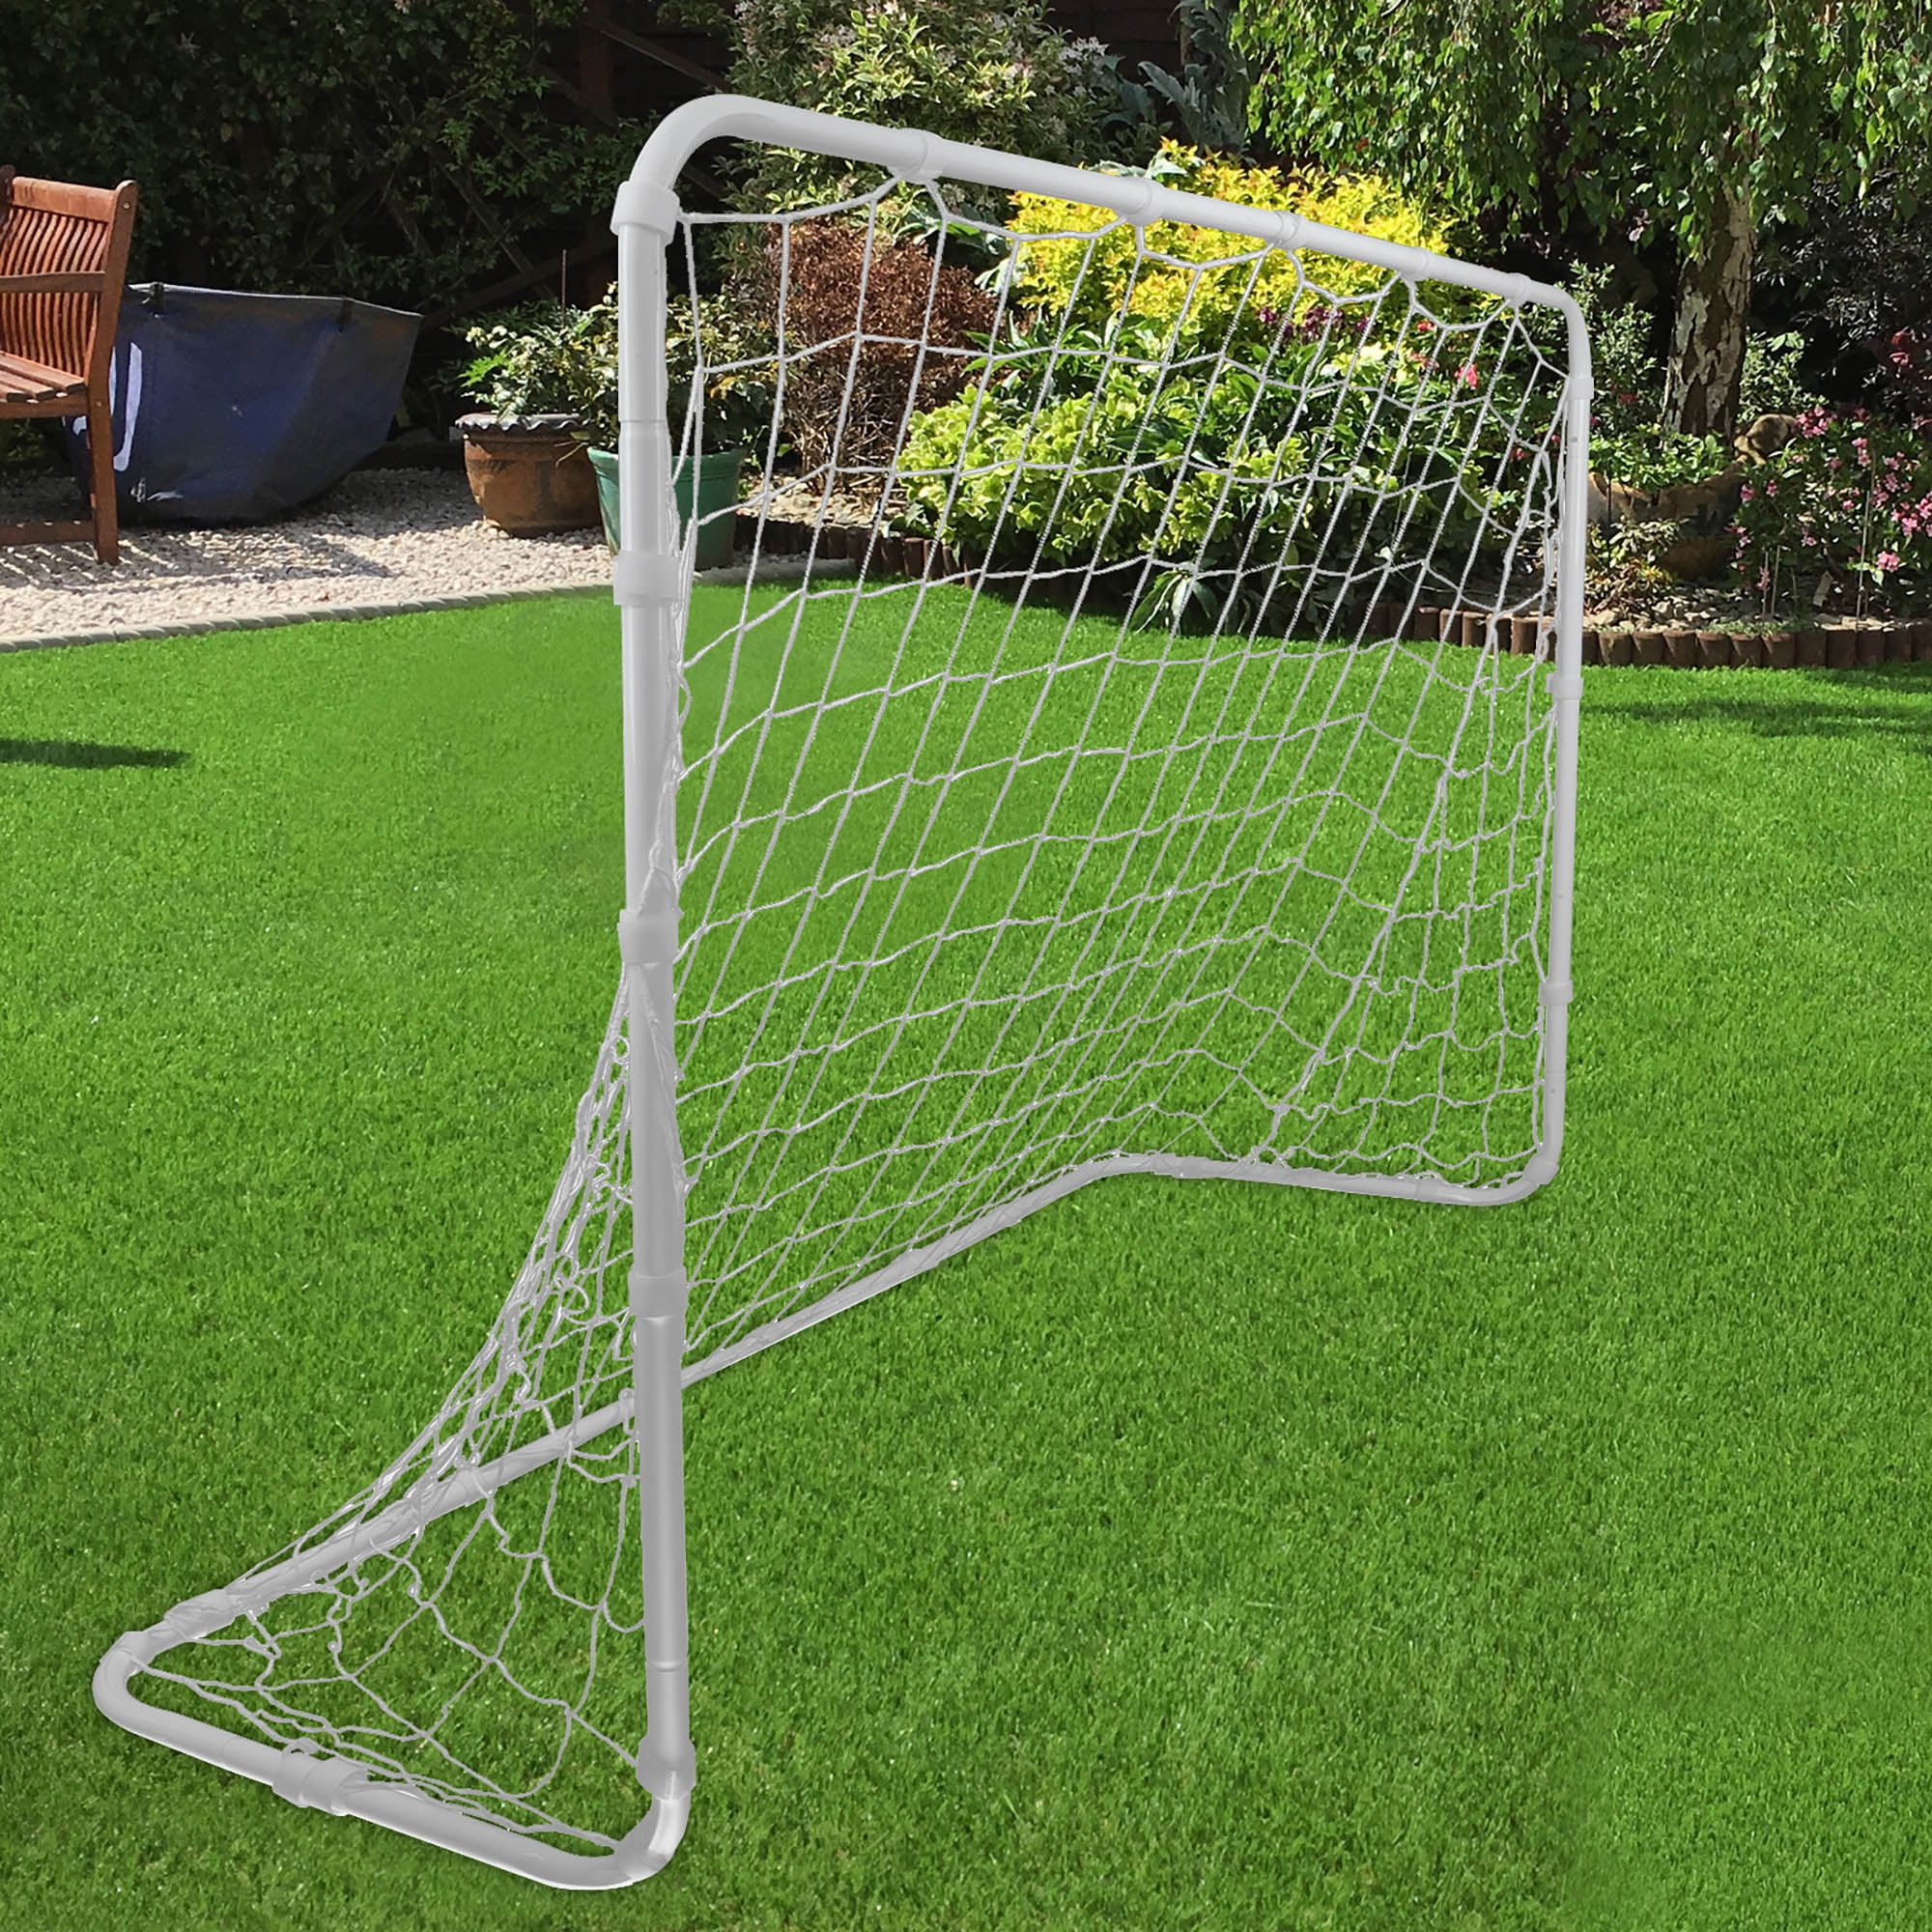 6 x 4ft Football Soccer Goal Post Net For Kids Outdoor Football Match new.